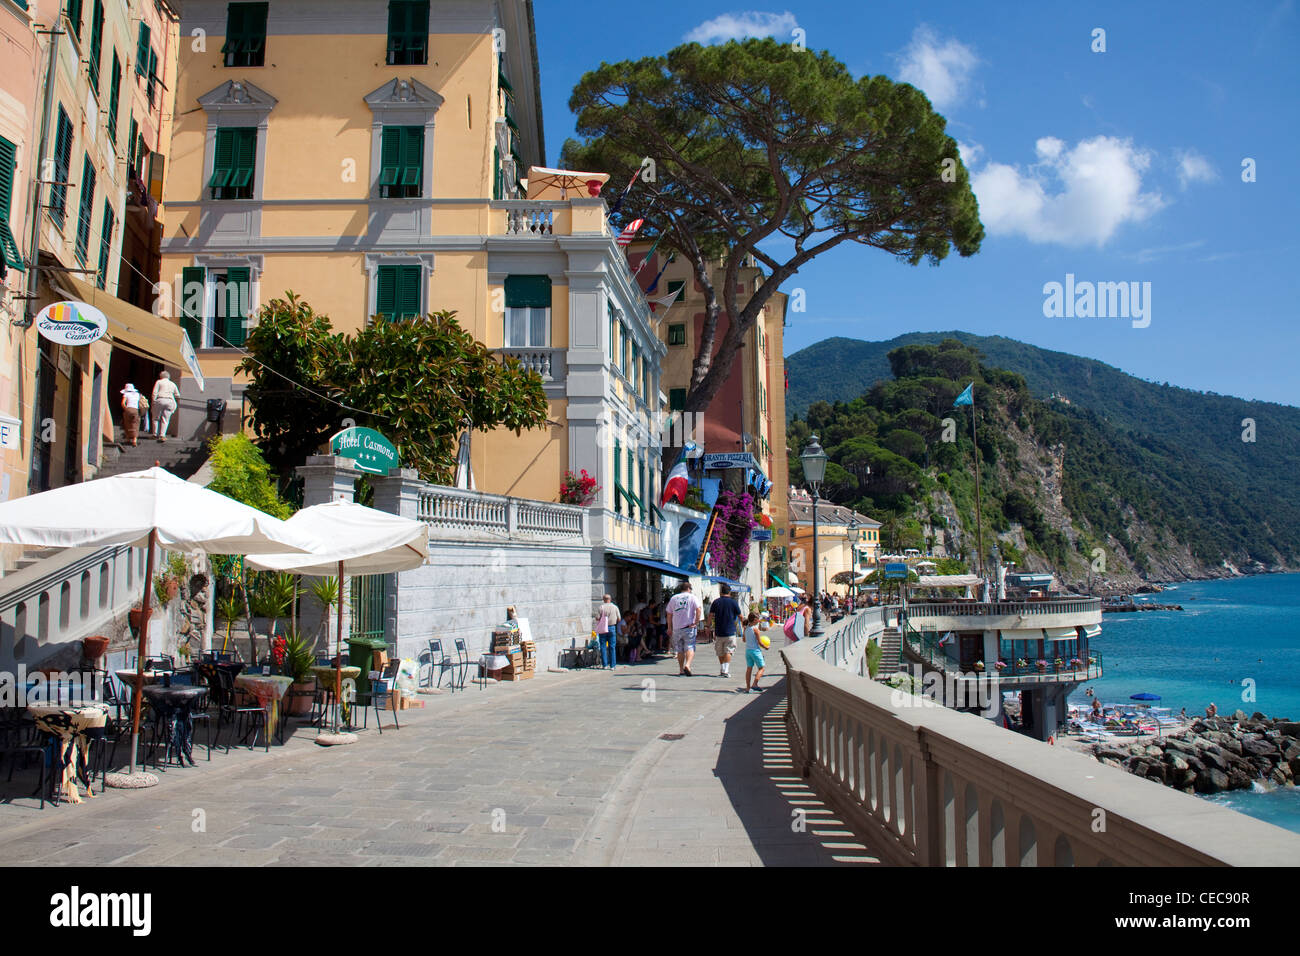 Street cafe at the beach promenade, fishing village Camogli, province Genua, Liguria di Levante, Italy, Mediterranean sea, Europe Stock Photo